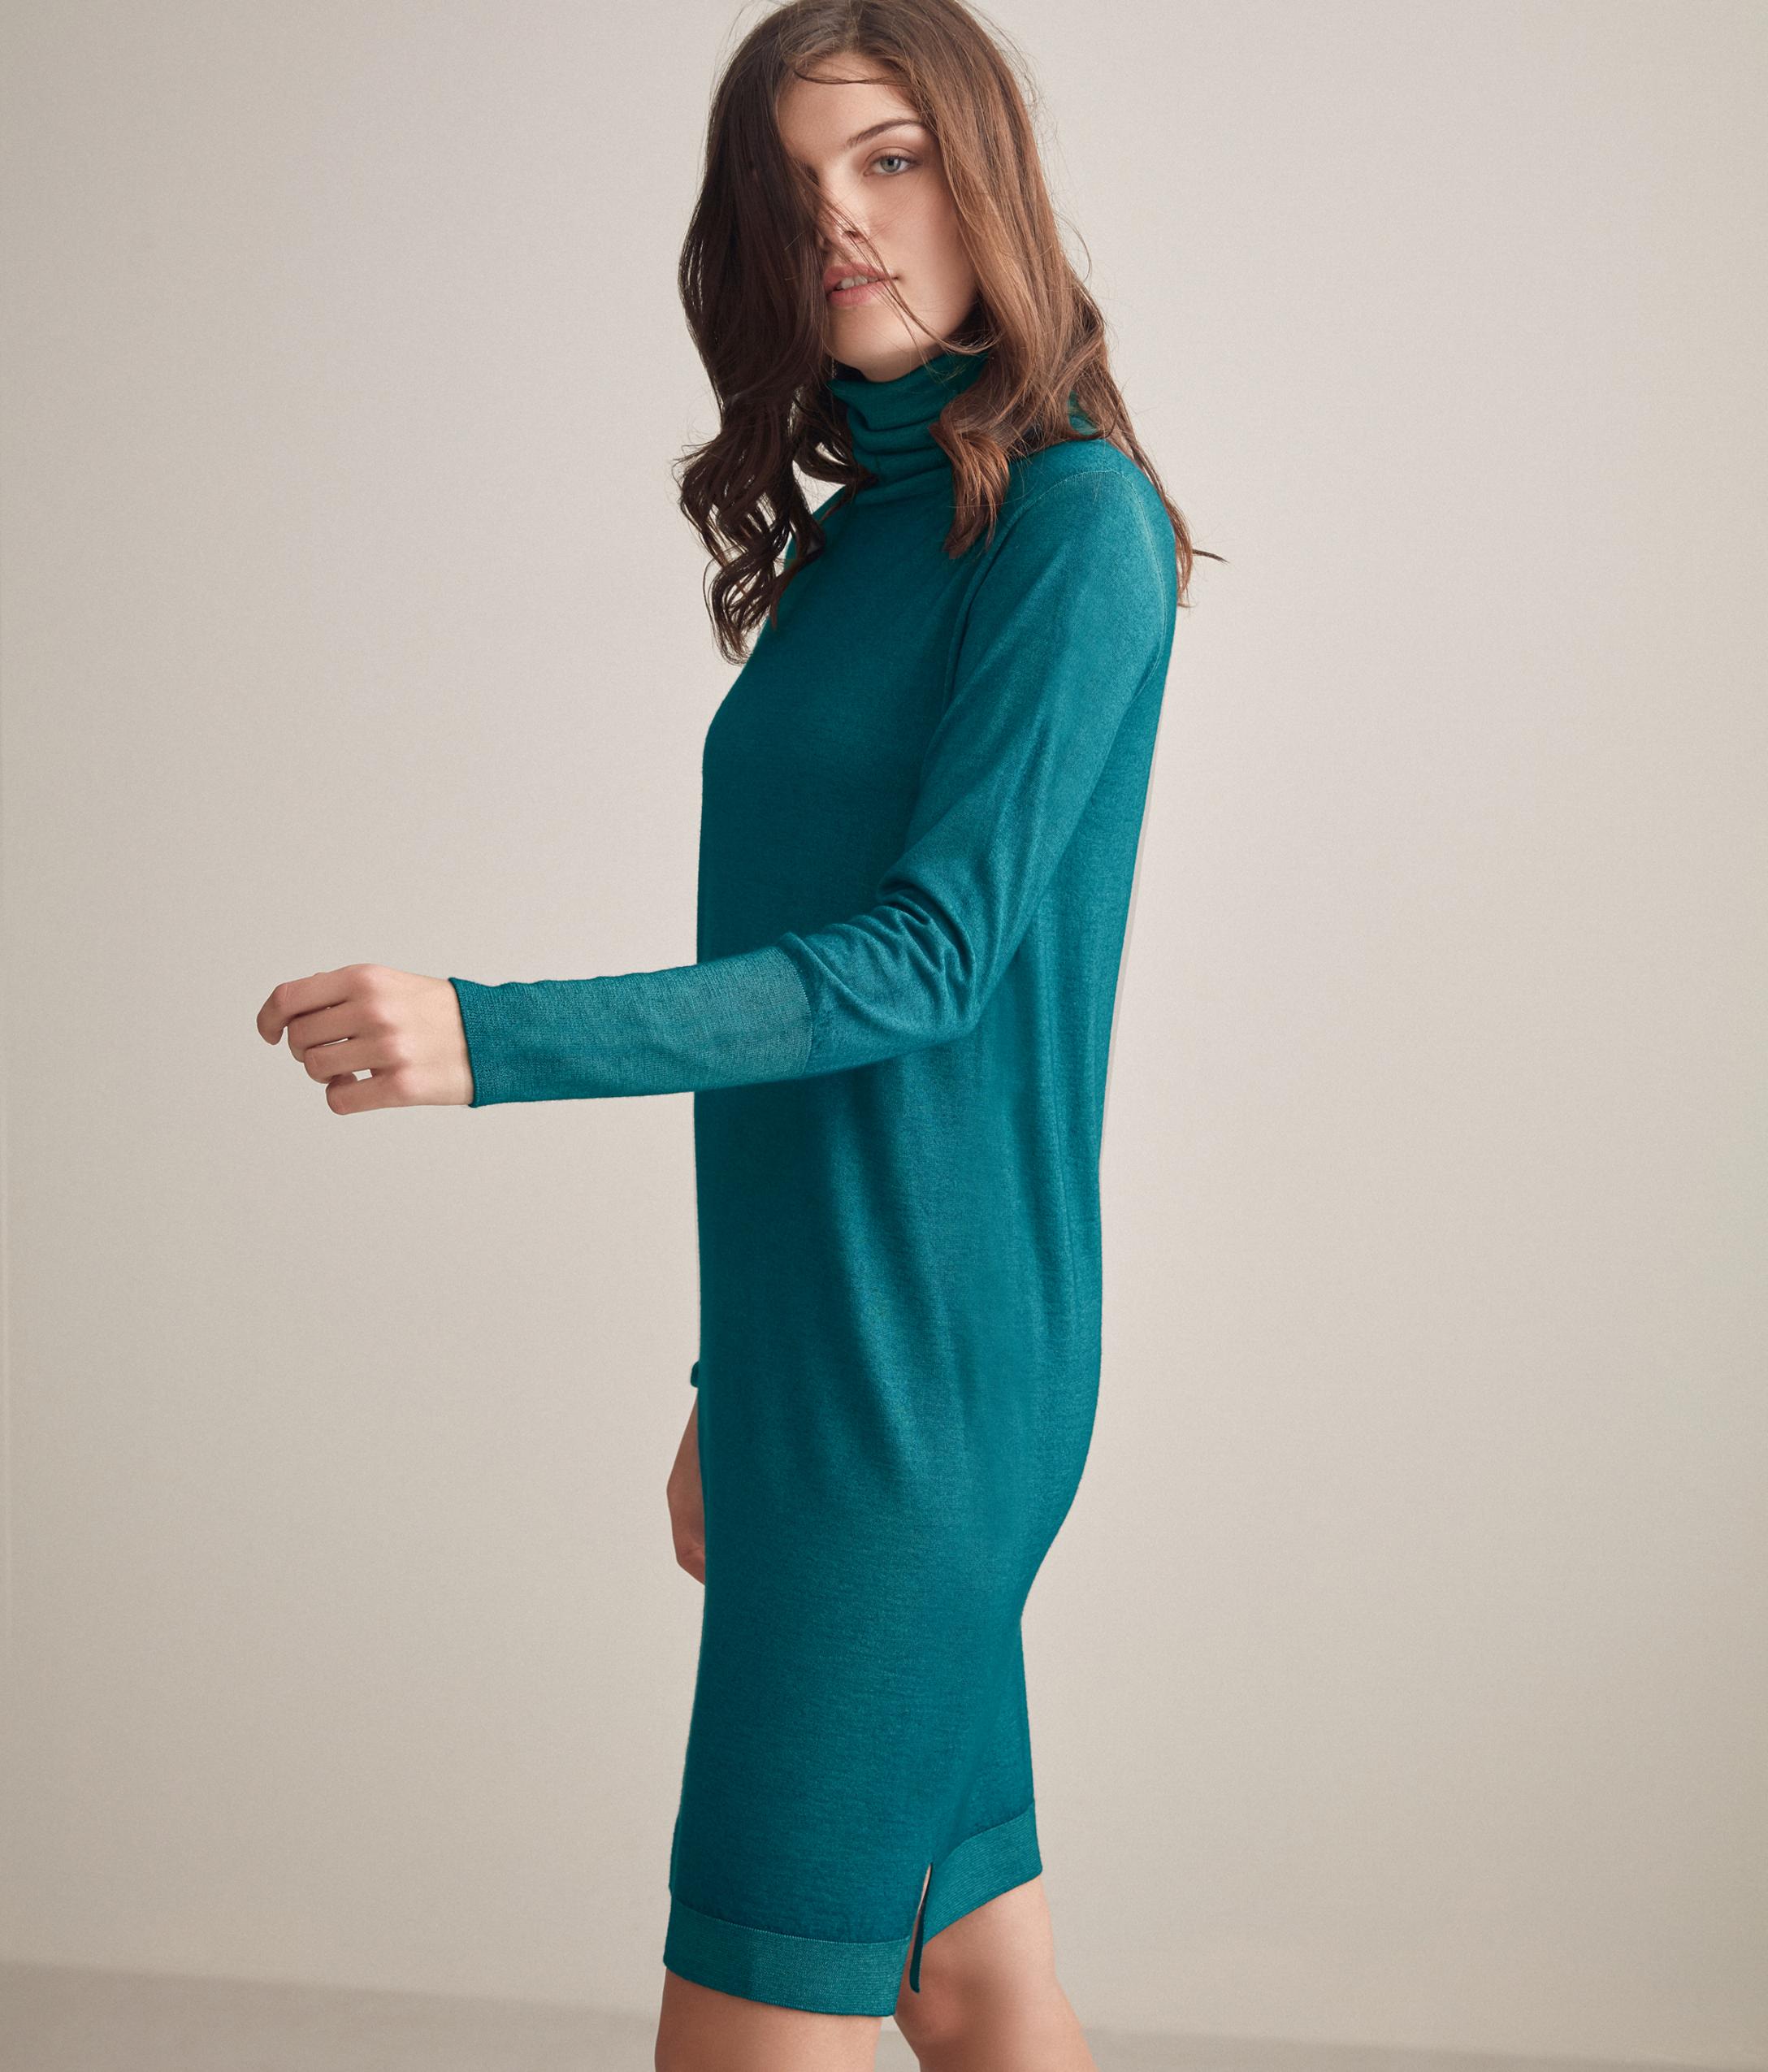 Falconeri Rollkragen-Kleid Aus Kaschmir Grün - 8450 - Smeraldo M